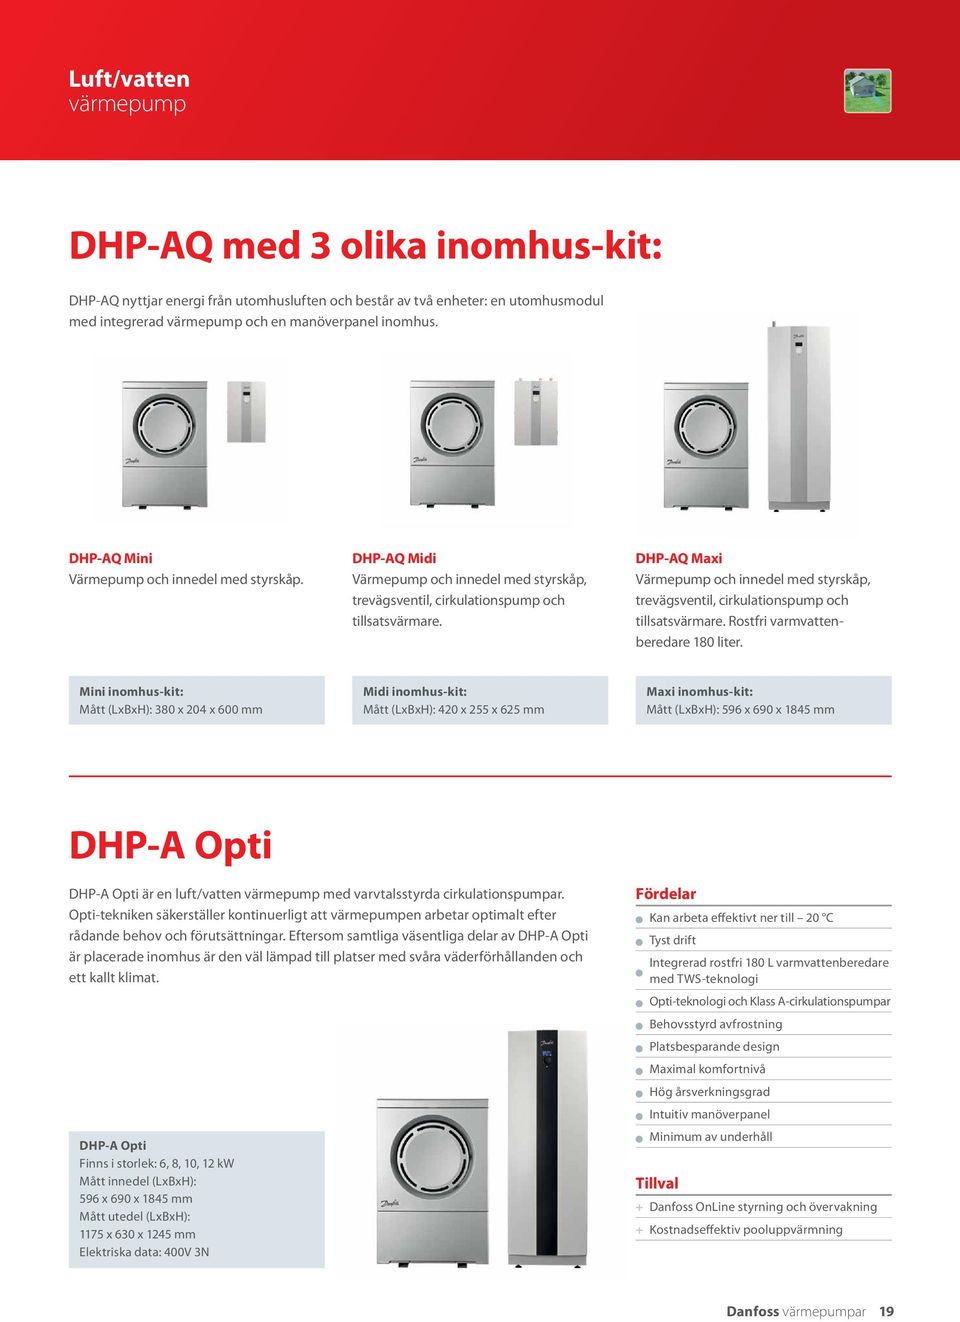 DHP-AQ Maxi Värmepump och innedel med styrskåp, trevägsventil, cirkulationspump och tillsatsvärmare. Rostfri varmvattenberedare 180 liter.